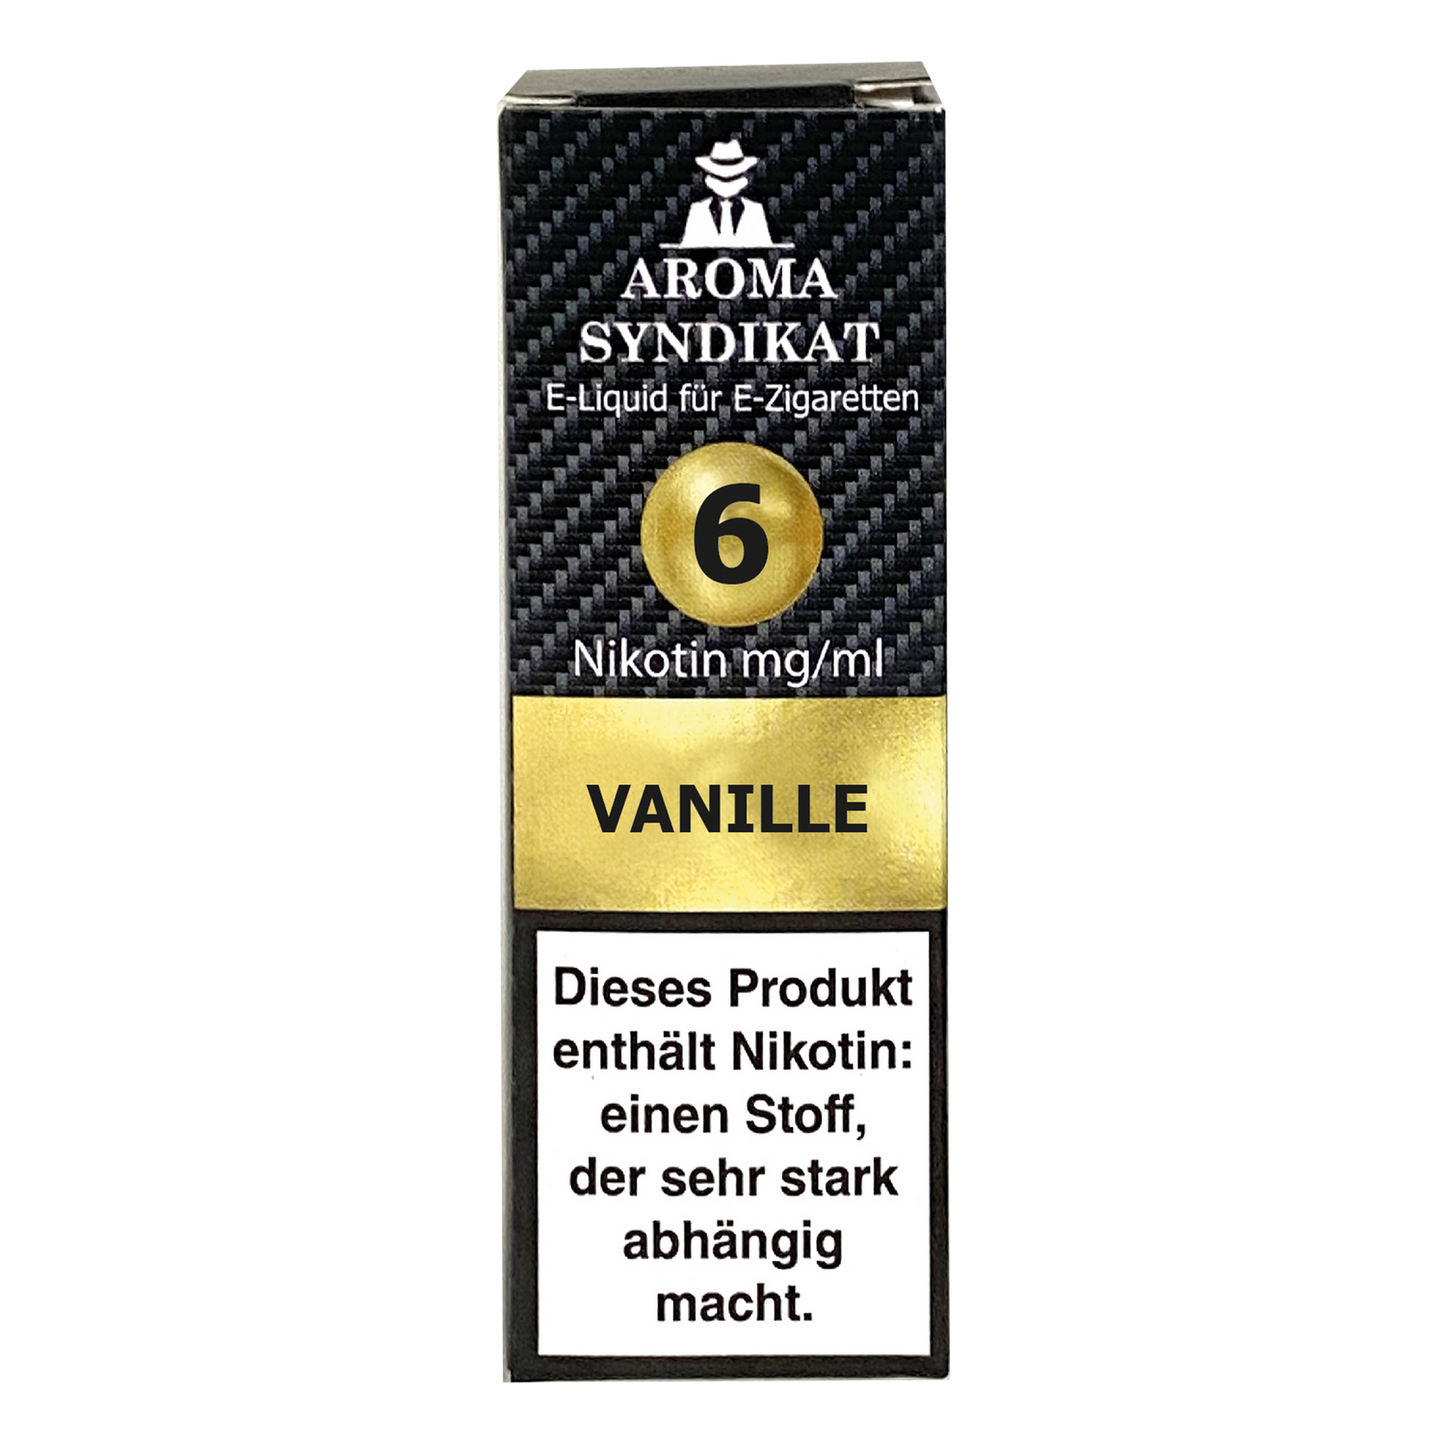 Aroma Syndikat Vanille E-Zigaretten Liquid